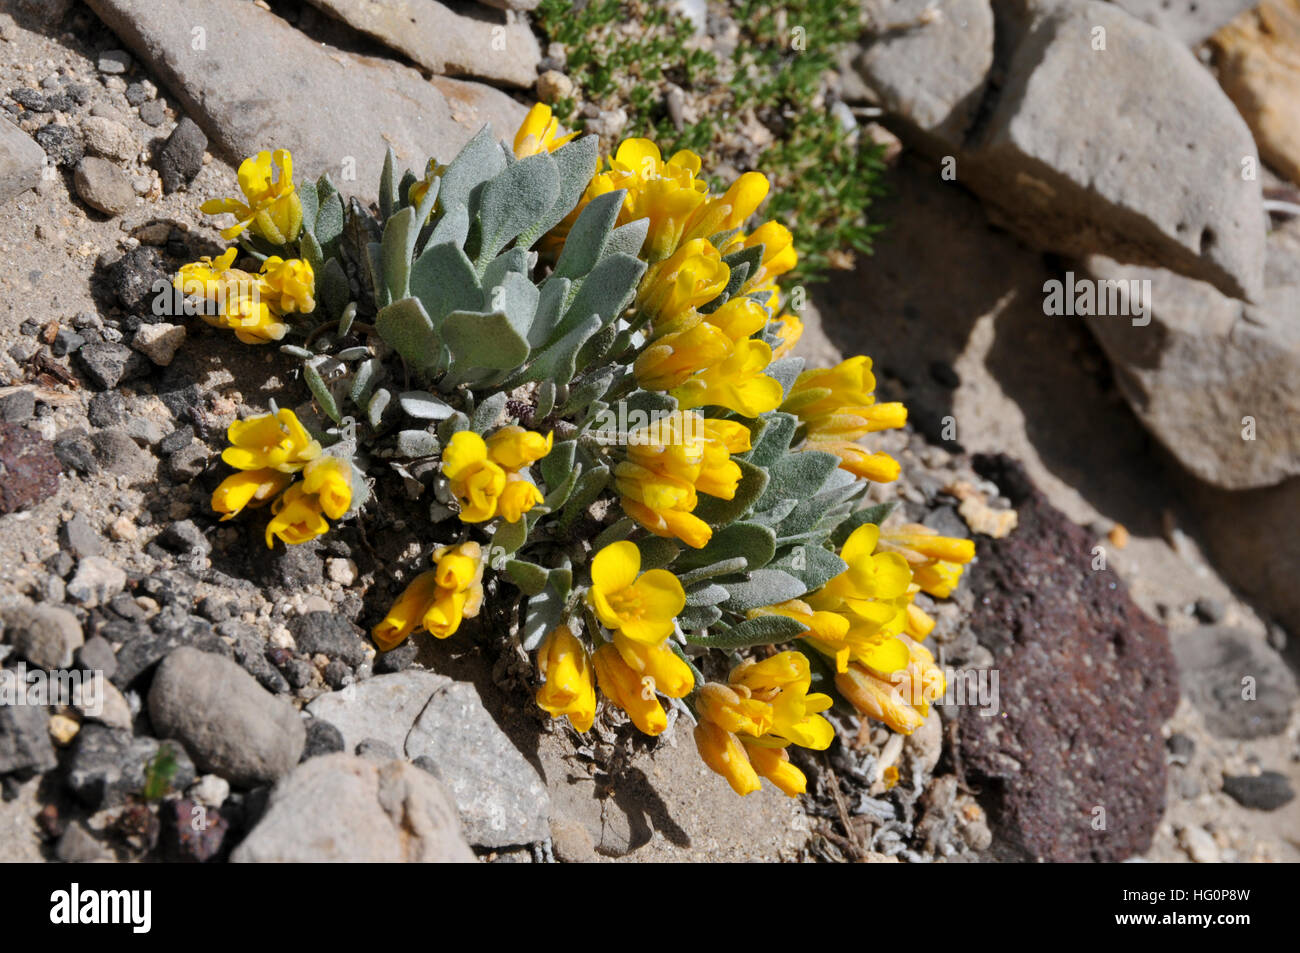 mountain plant with yellow floweres Stock Photo